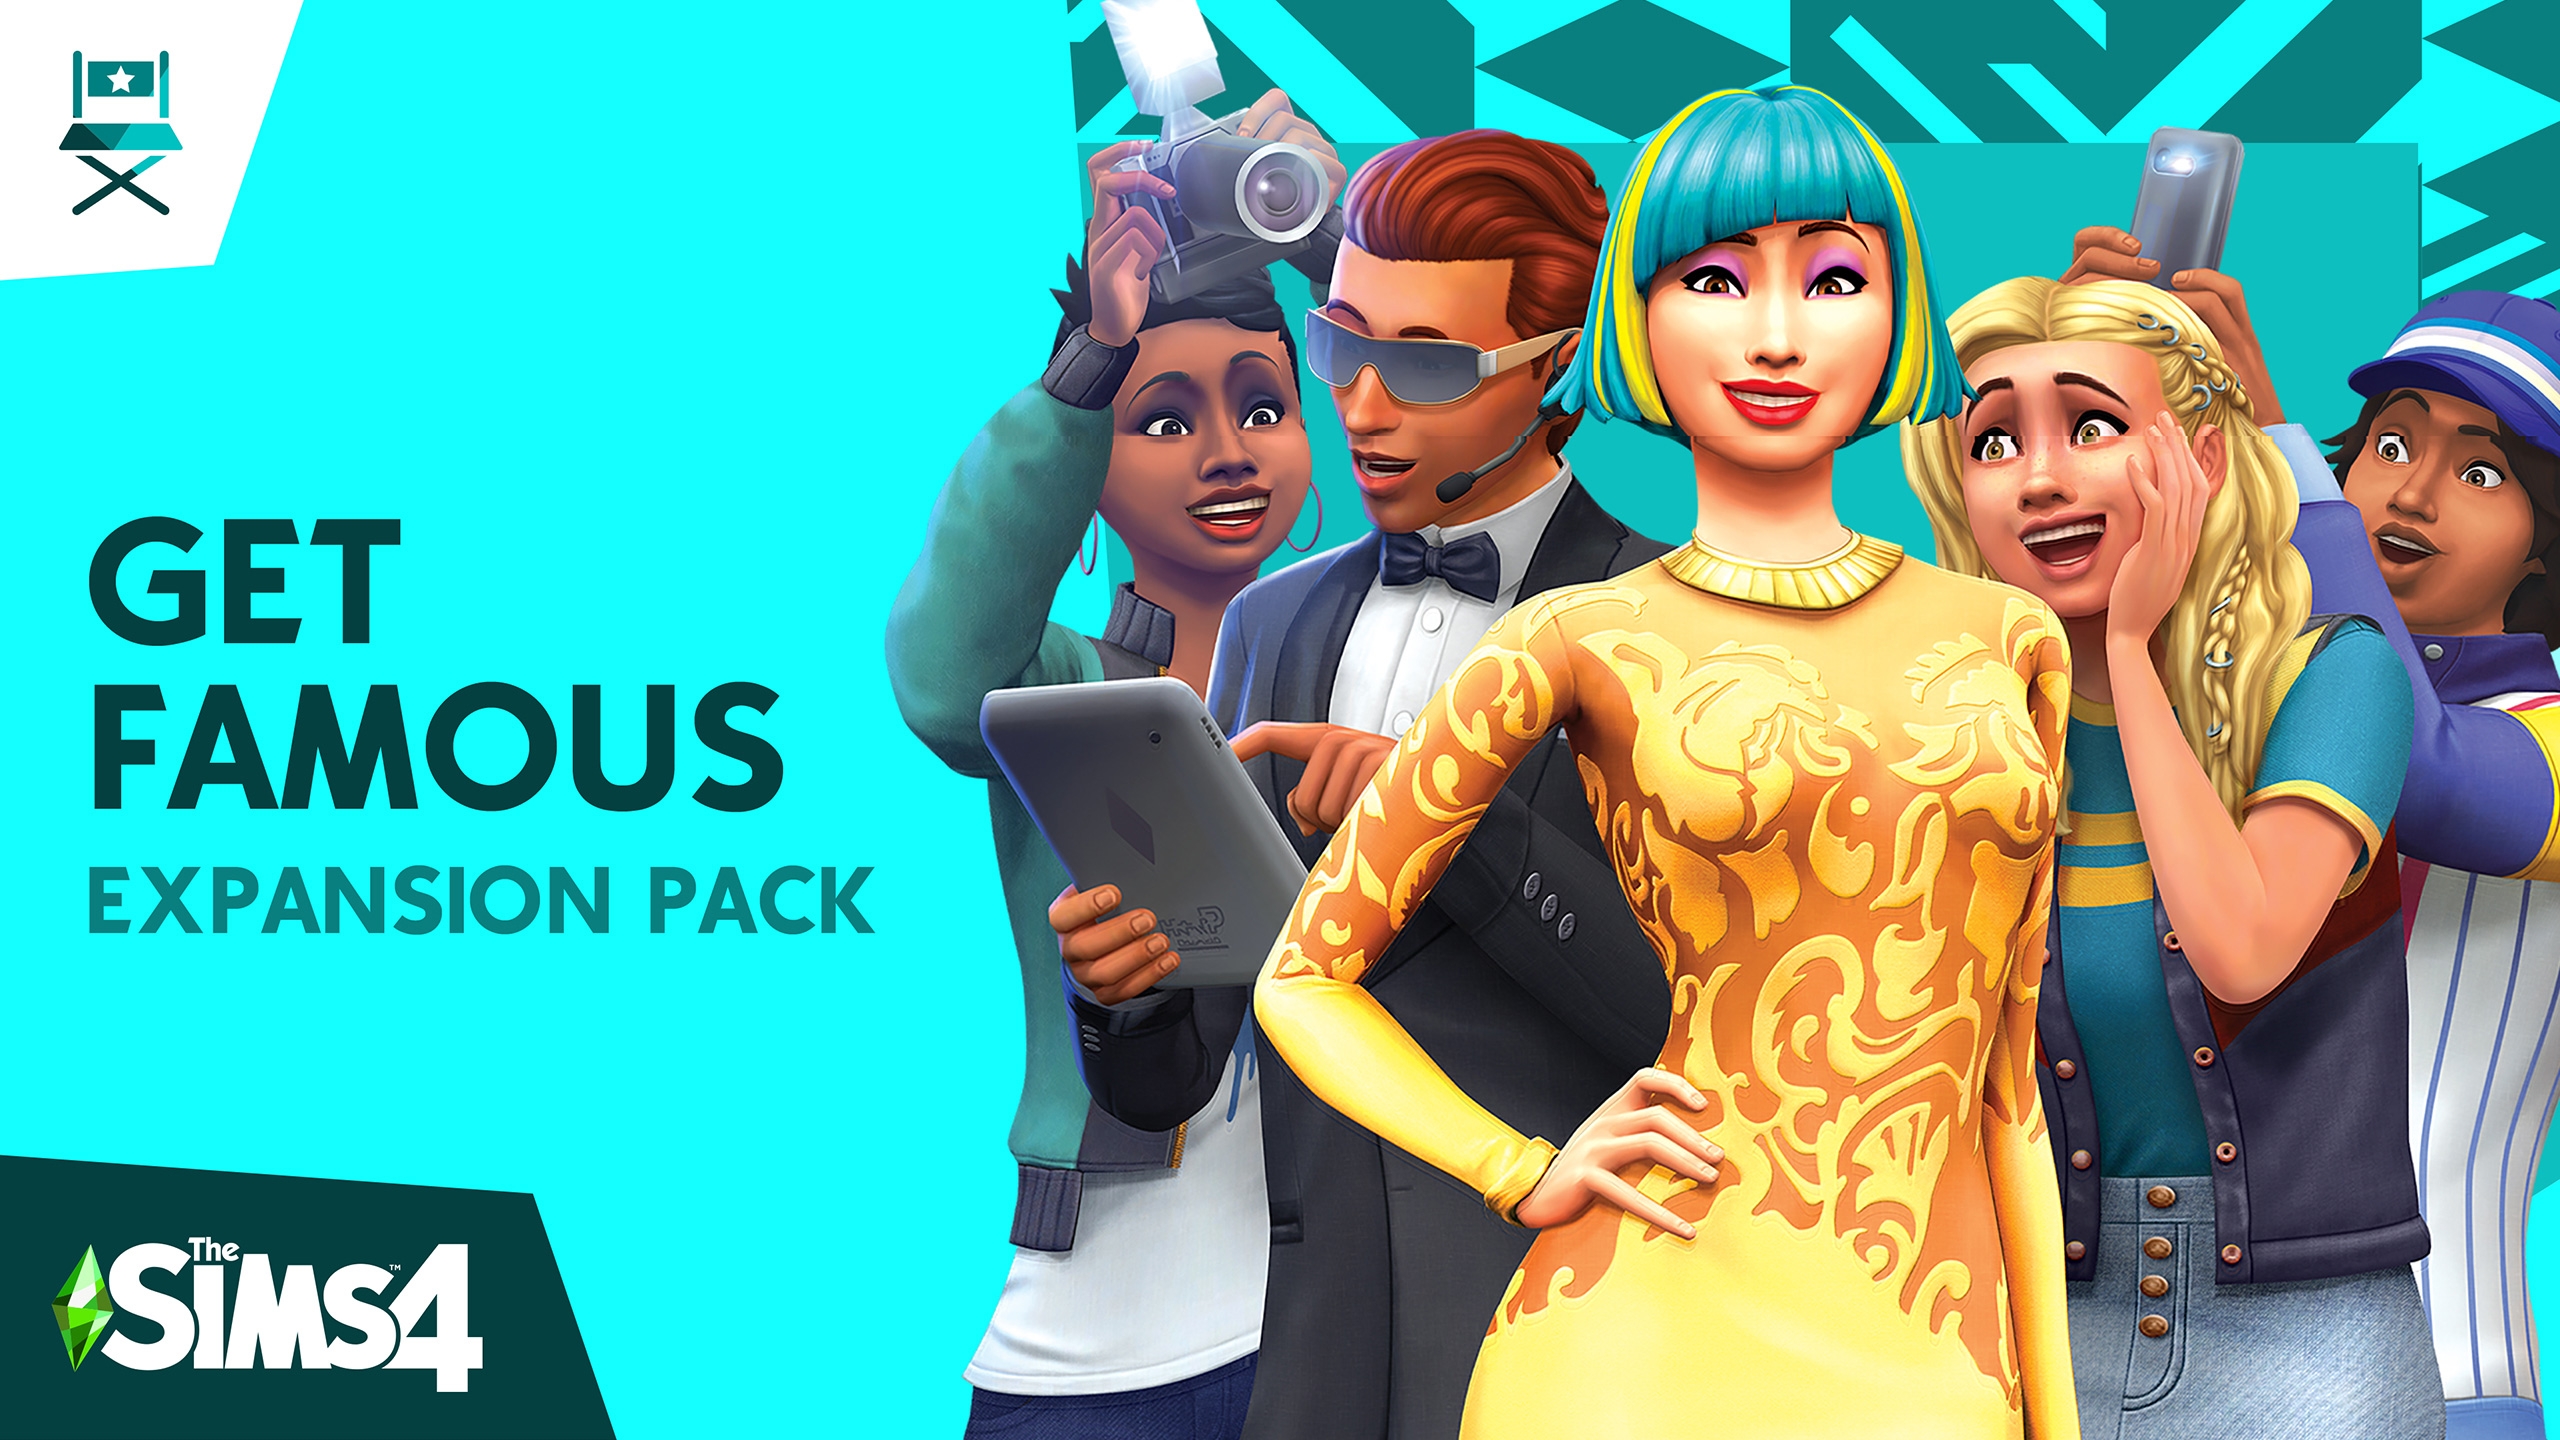 Trucos para la reputación y fama en Los Sims 4: ¡Rumbo a la Fama!